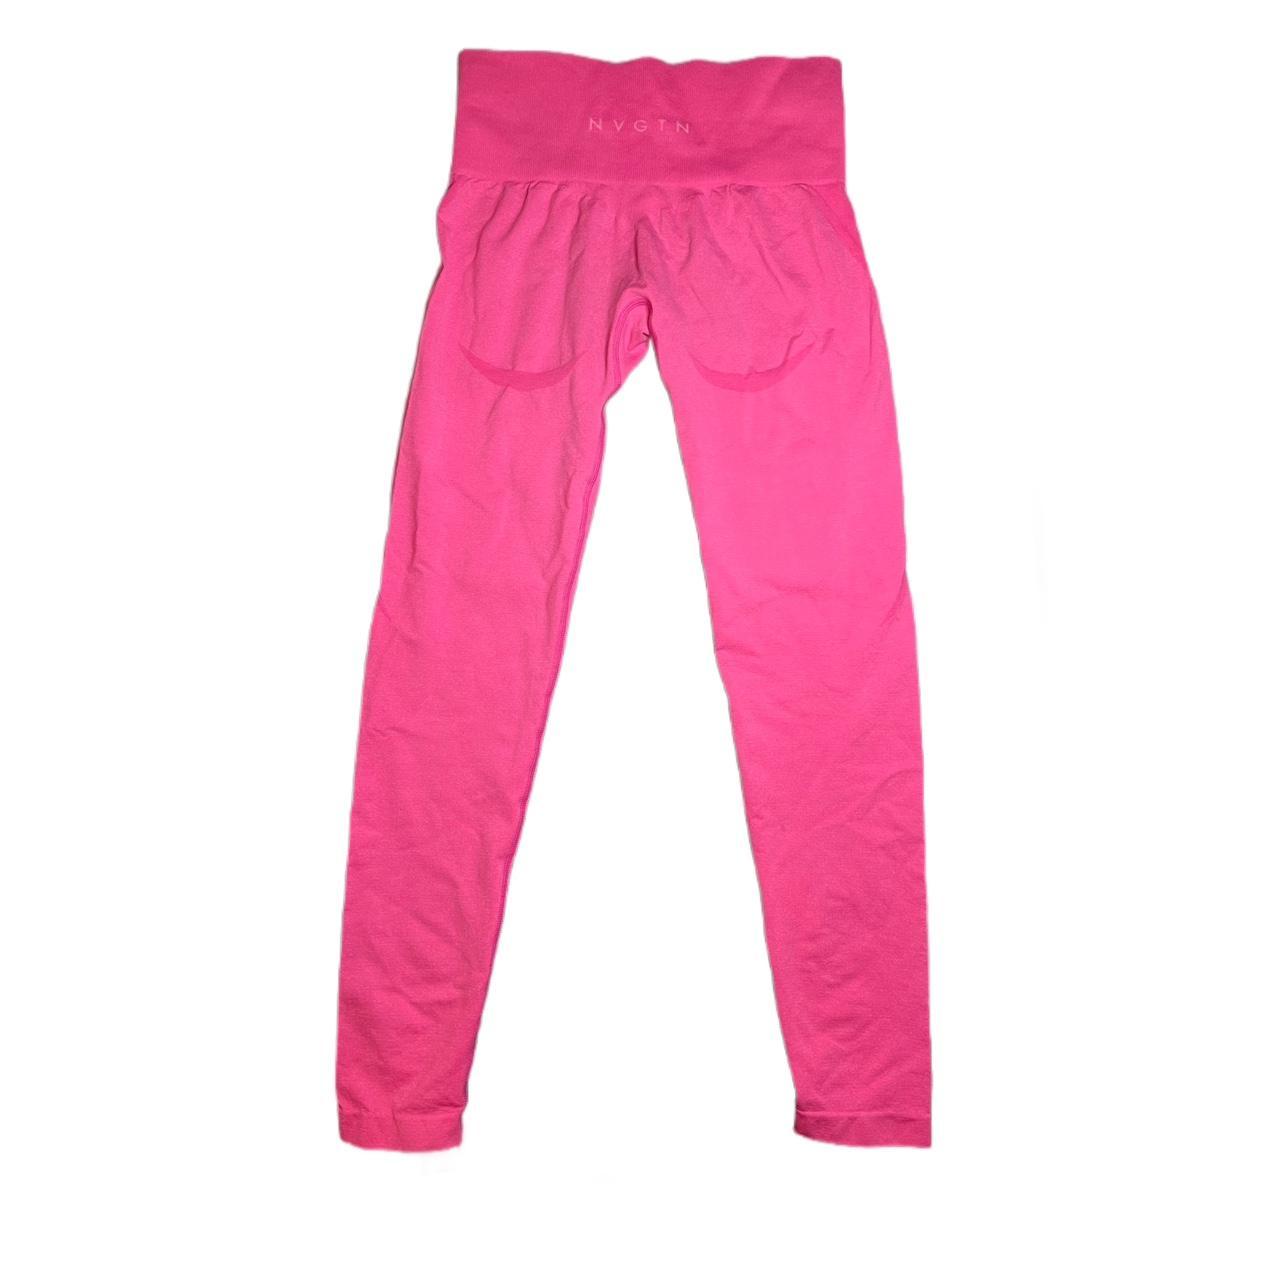 pink nvgtn seamless workout leggings worn to try - Depop